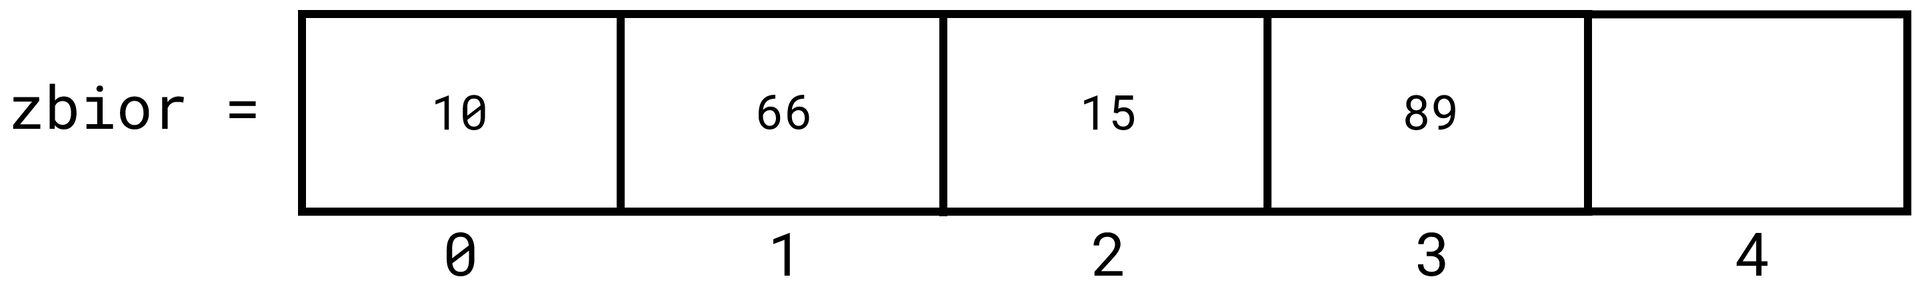 Grafika przedstawia napis "zbior = " a dalej znajduje się prostokątna długa tablica składająca się z pięciu prostokątnych pól. Pola są ponumerowane poniżej tablicy od zera do czterech, licząc od lewej strony. W pierwszym polu z indeksem 0 wpisano liczbę 10. W drugim polu z indeksem 1 wpisano liczbę 66. W trzecim polu z indeksem 2 wpisano liczbę 15. W czwartym polu z indeksem 3 wpisano liczbę 89.